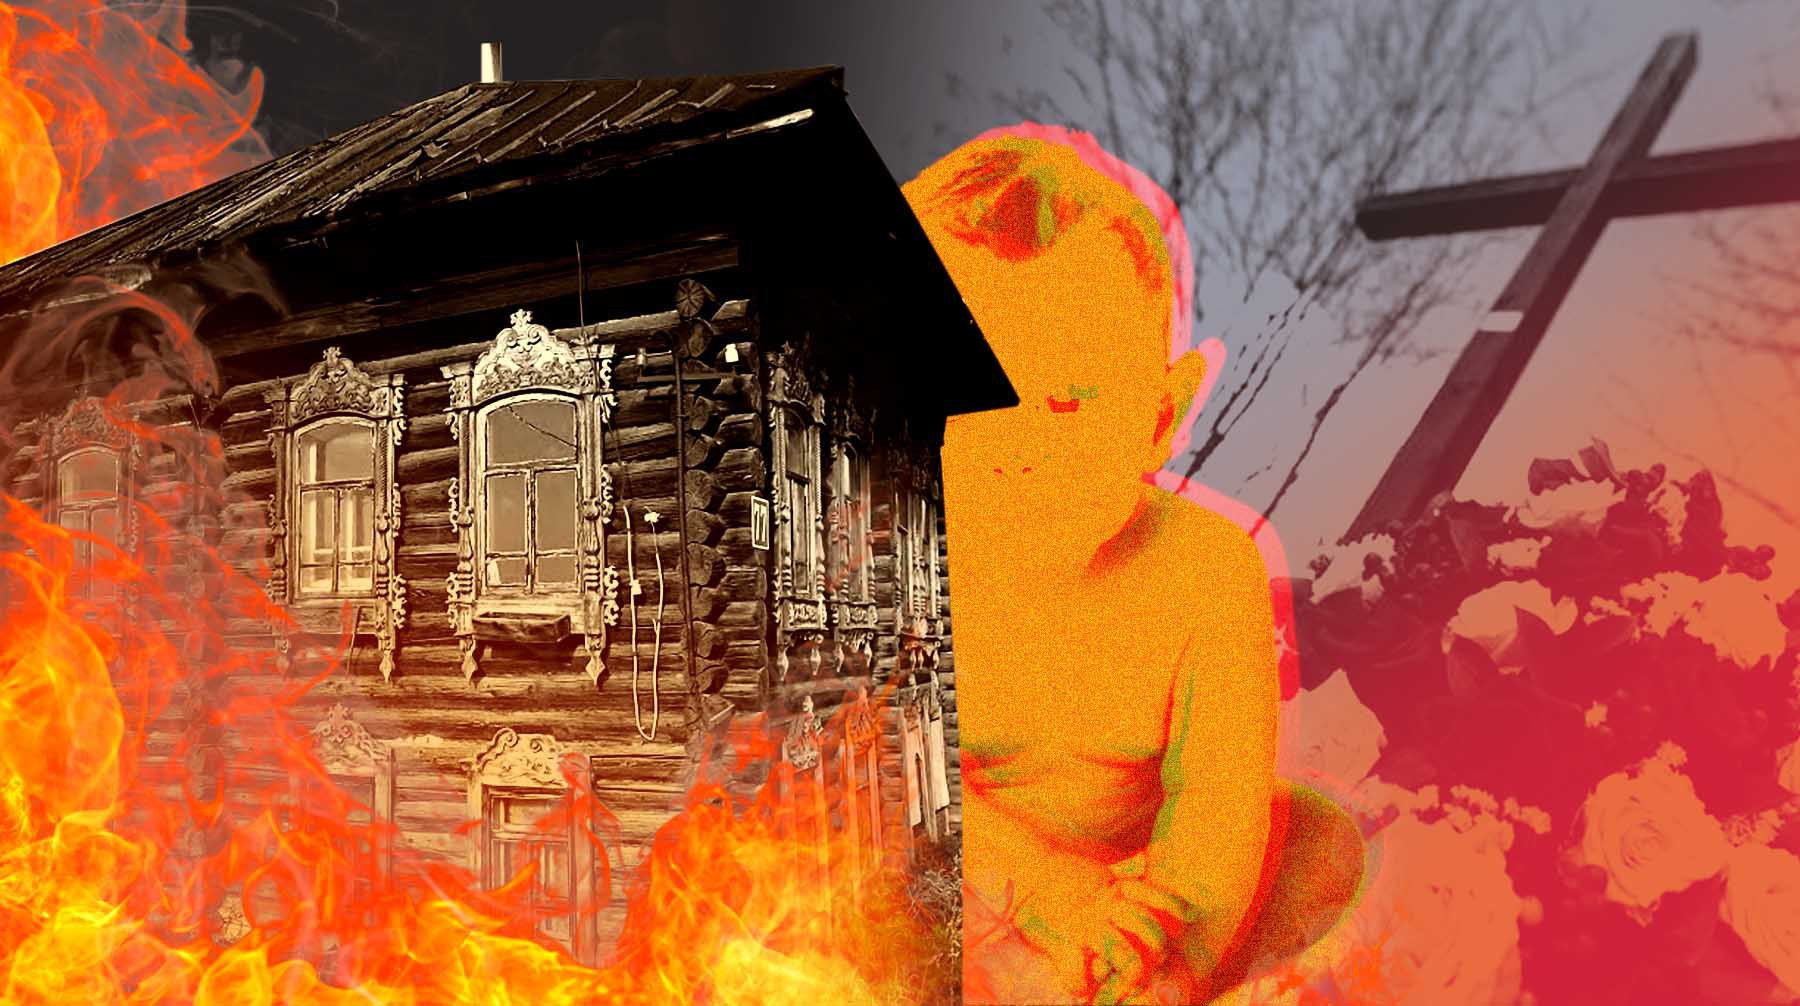 Dailystorm - «Поможем с похоронами»: омбудсмен рассказал о семье с Урала, где сгорели пятеро детей